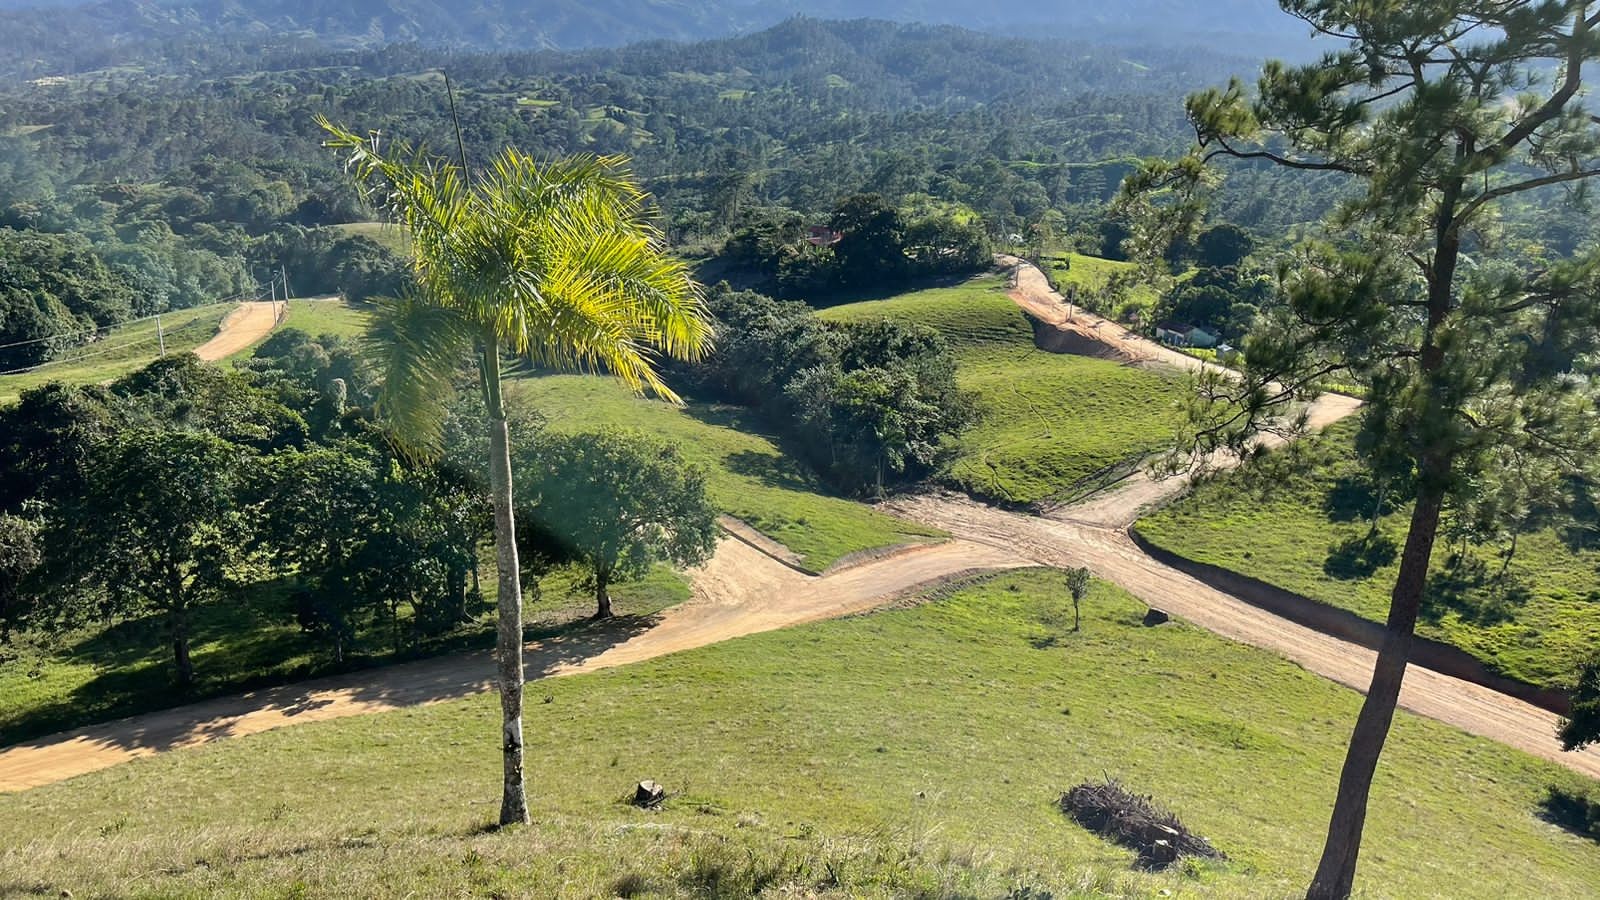 solares y terrenos - Construye la Villa de tus Sueños en Jarabacoa, Solares Disponibles